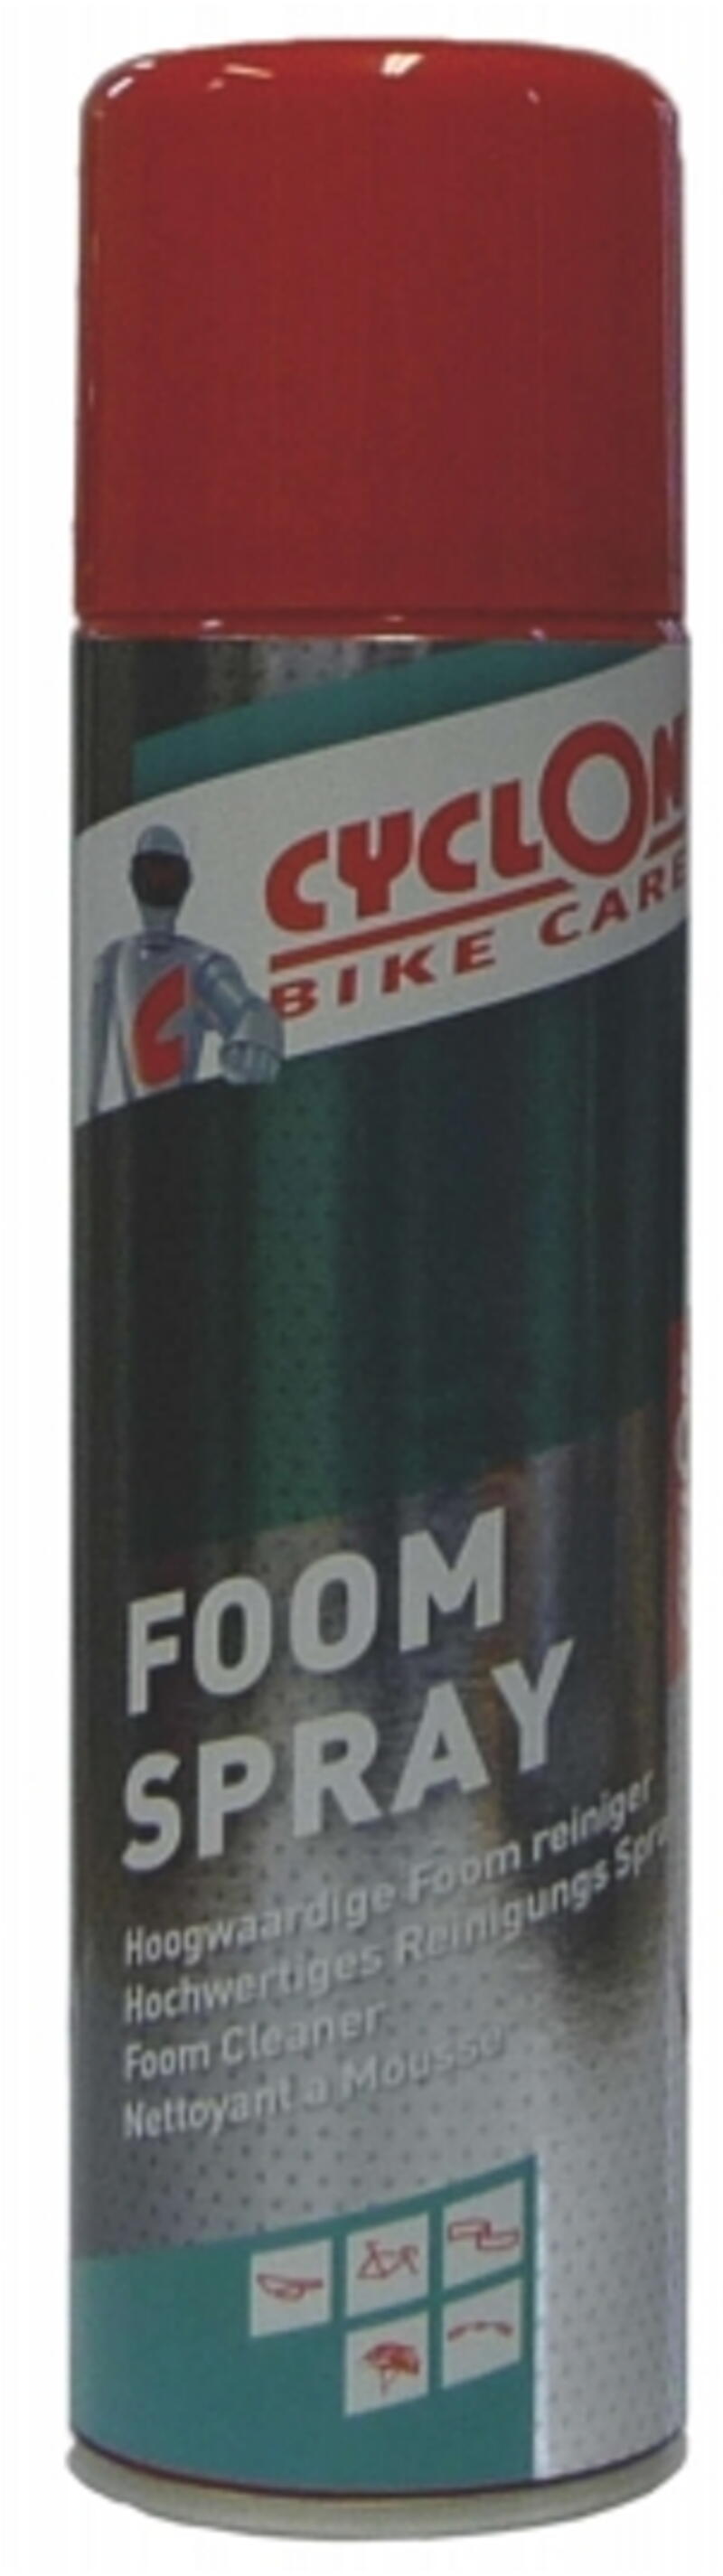 Cyclon Foom Spray 250ml